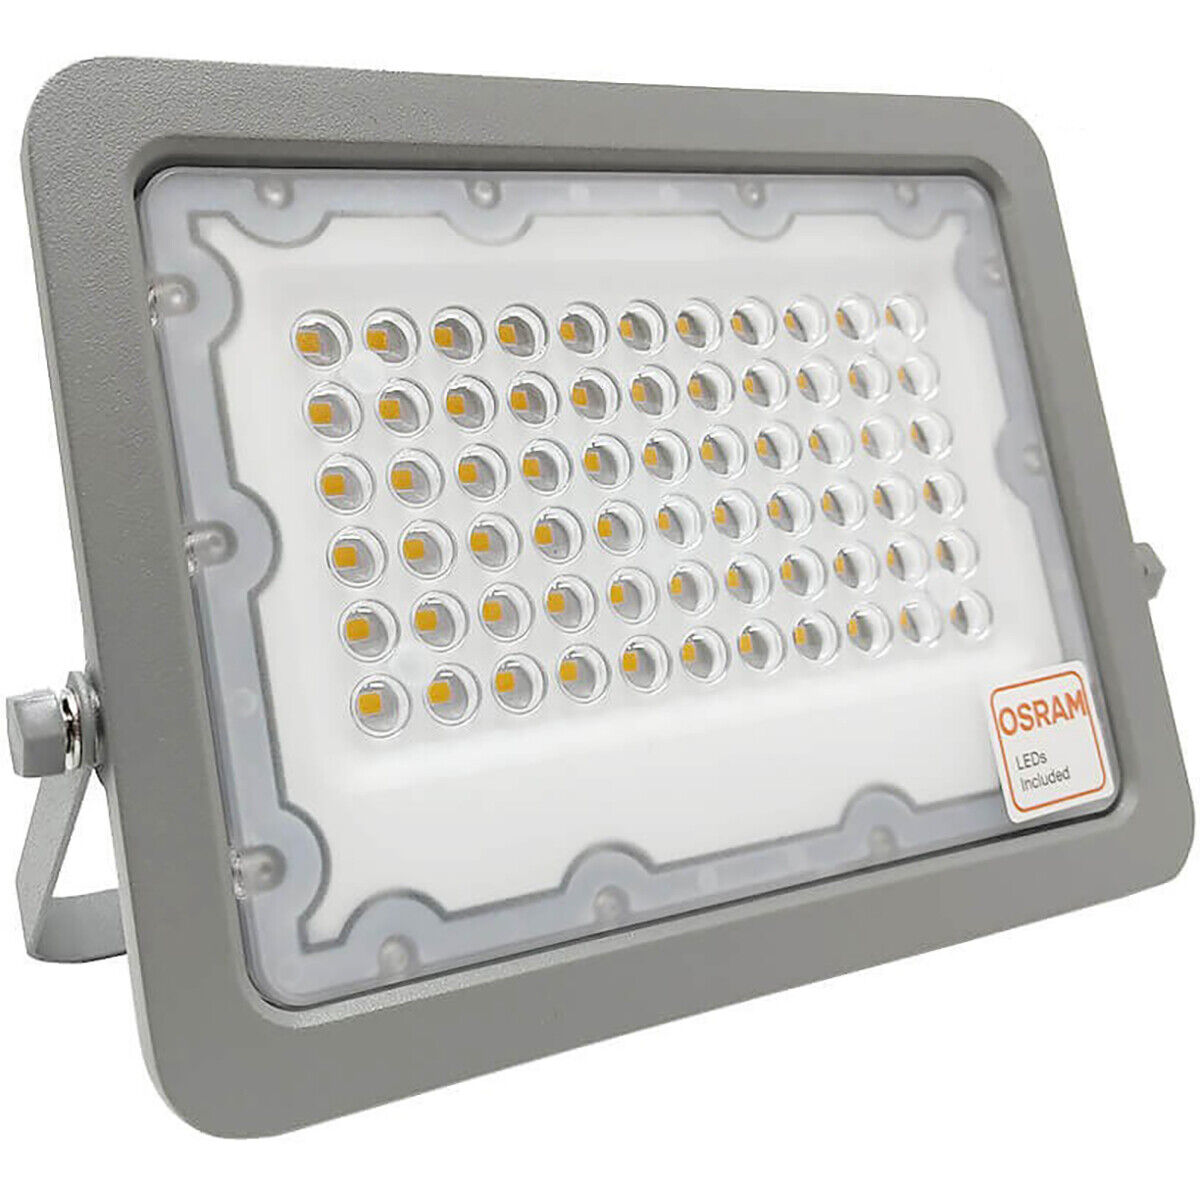 BES LED LED Bouwlamp - Facto Dary - 50 Watt - LED Schijnwerper - Helder/Koud Wit 6000K - Waterdicht IP65 - 120LM/W - Flikkervrij - OSRAM LEDs